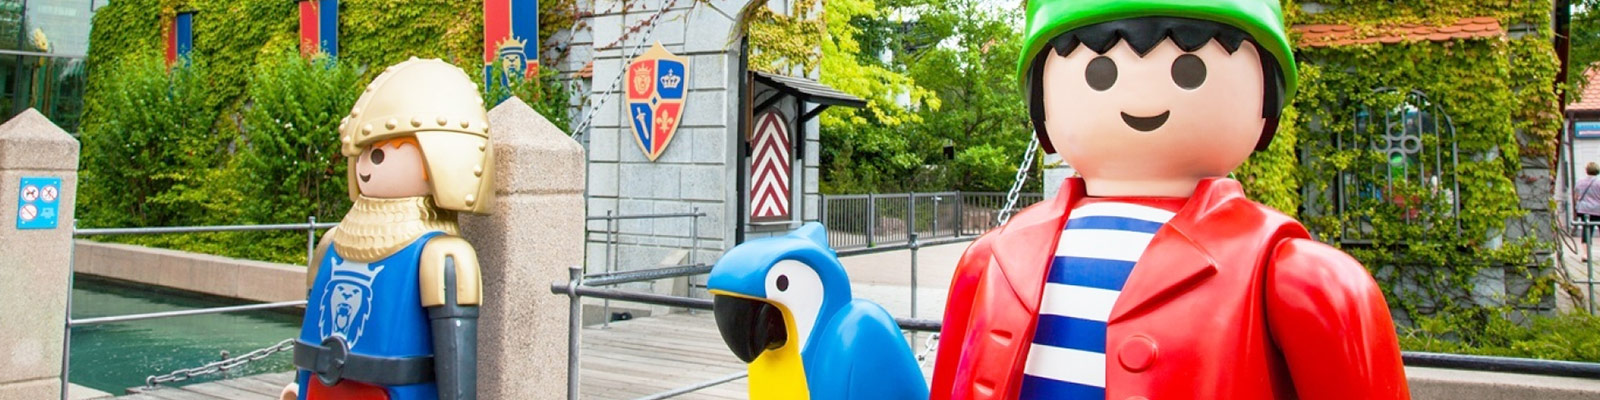 Playmobil Fun Park Alemania - El Inglés